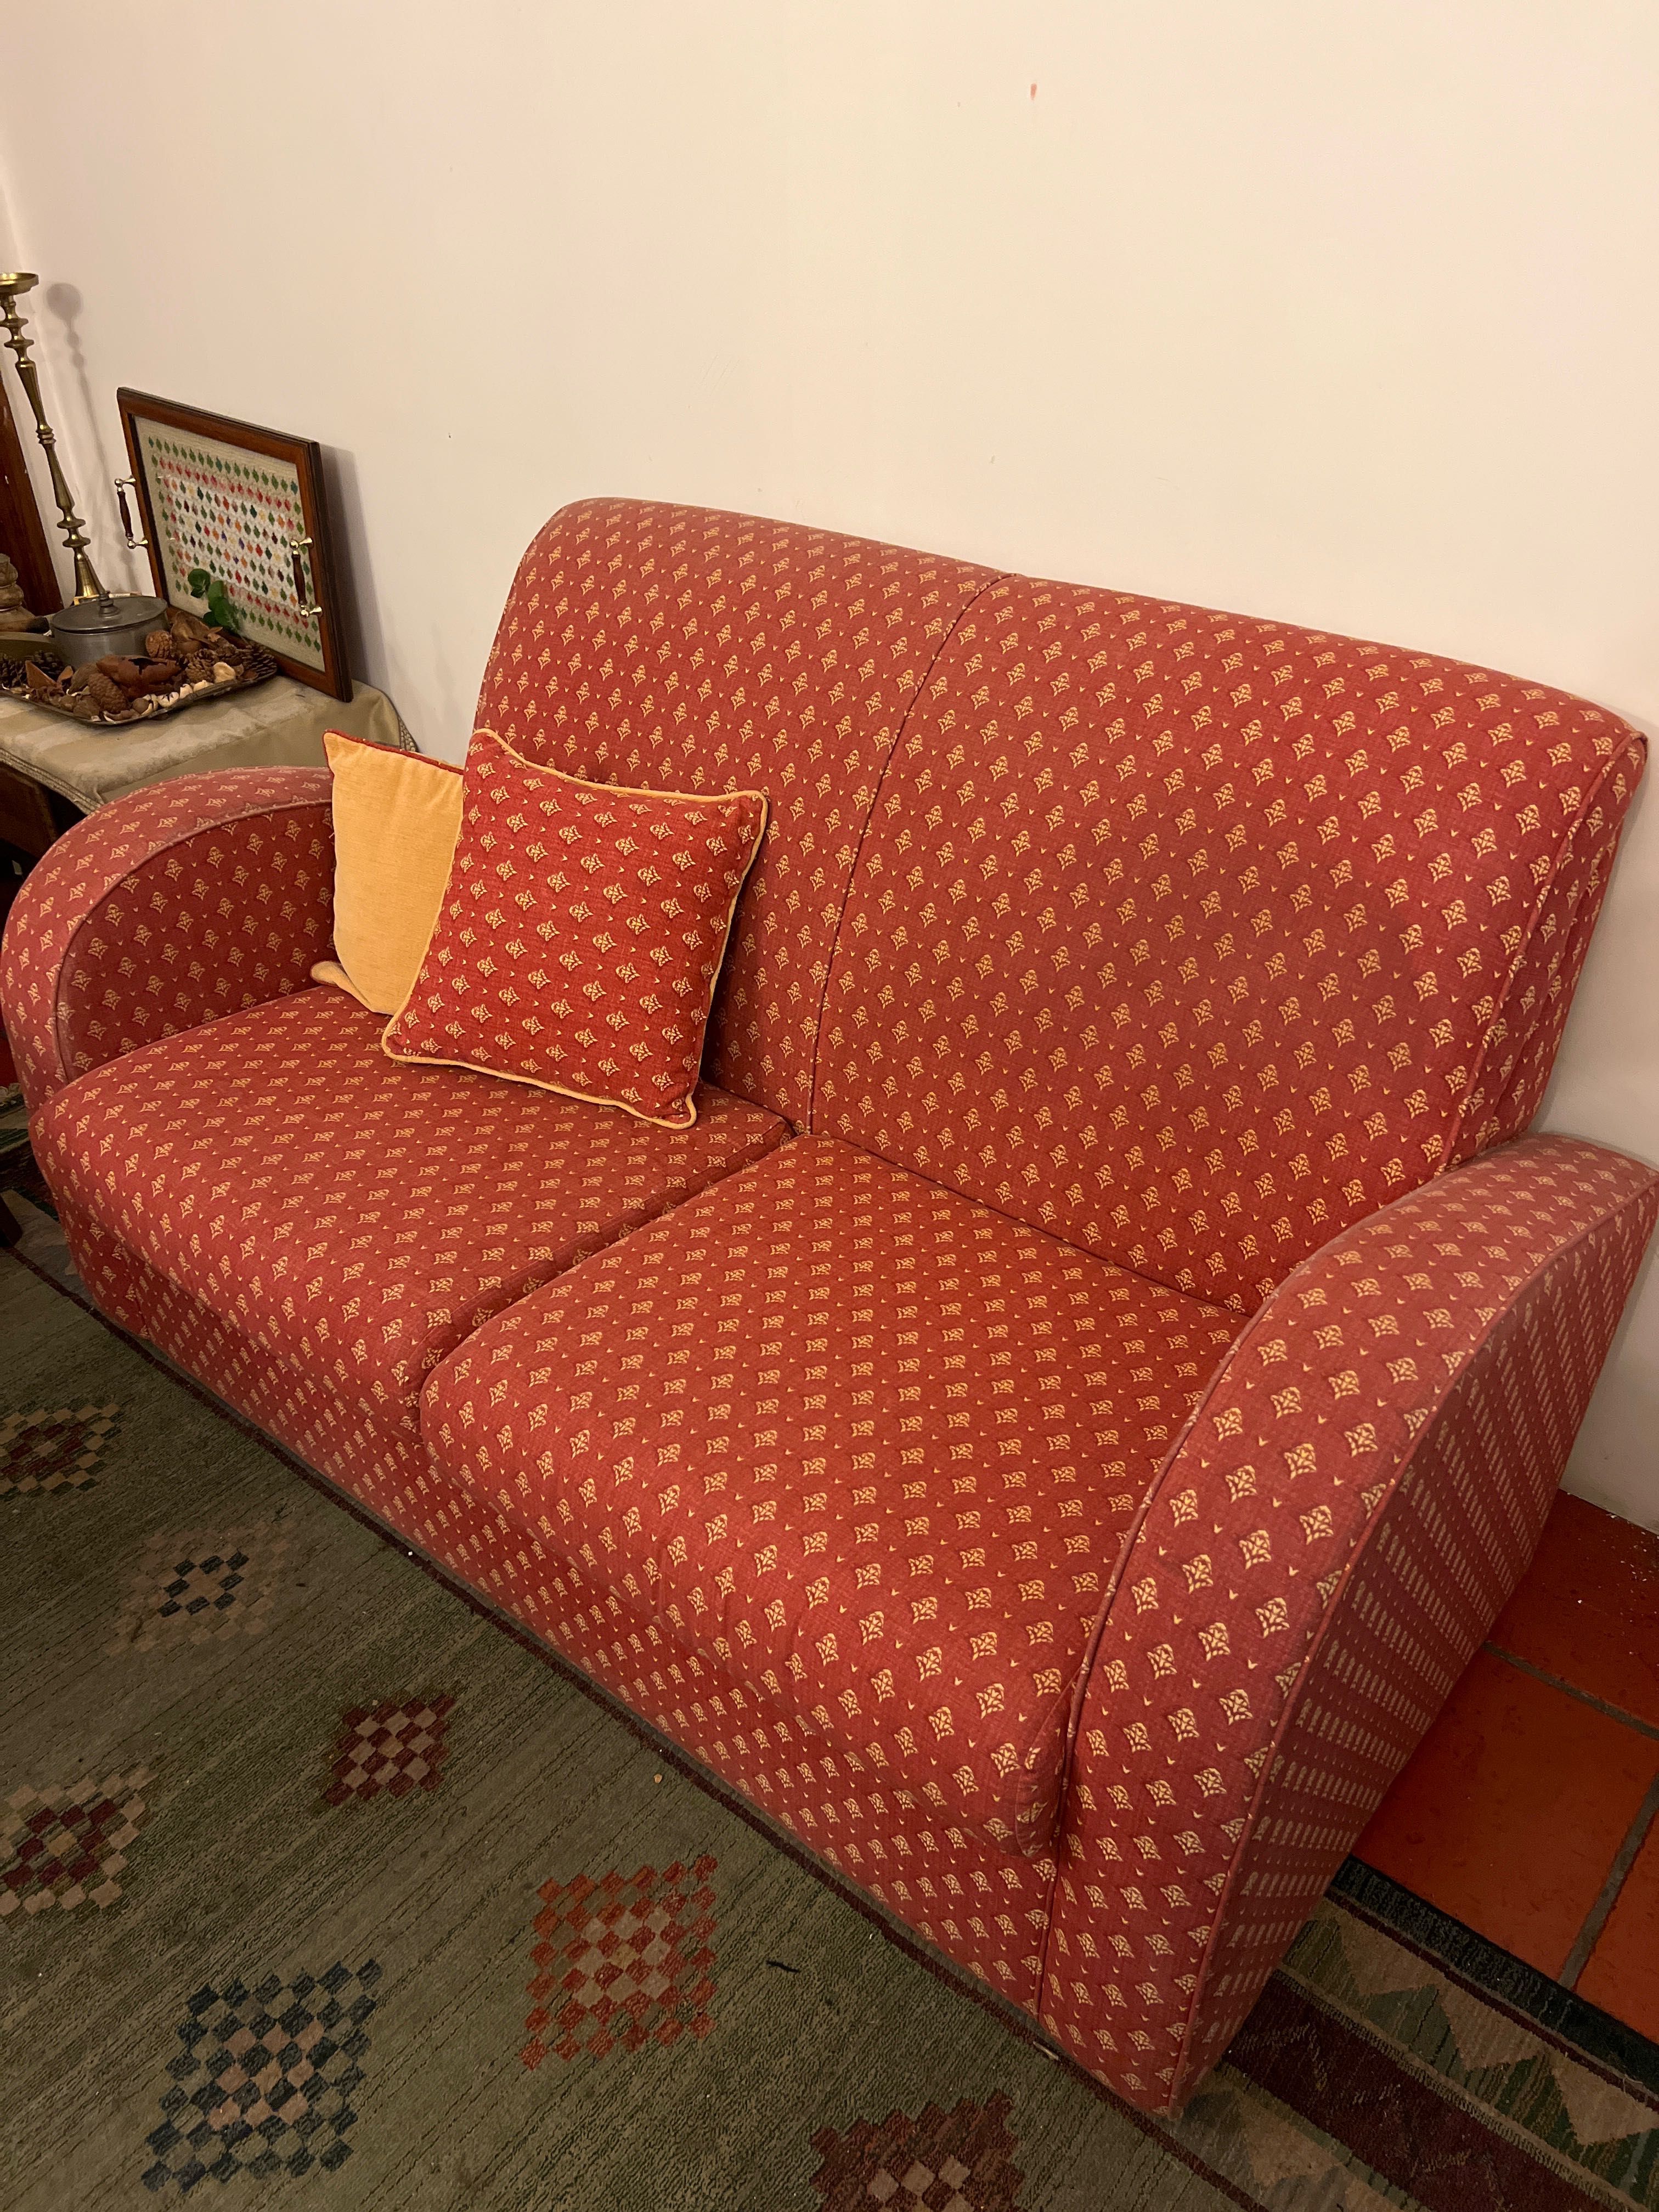 Sofá vermelho, com detalhes em amarelo e duas almofadas